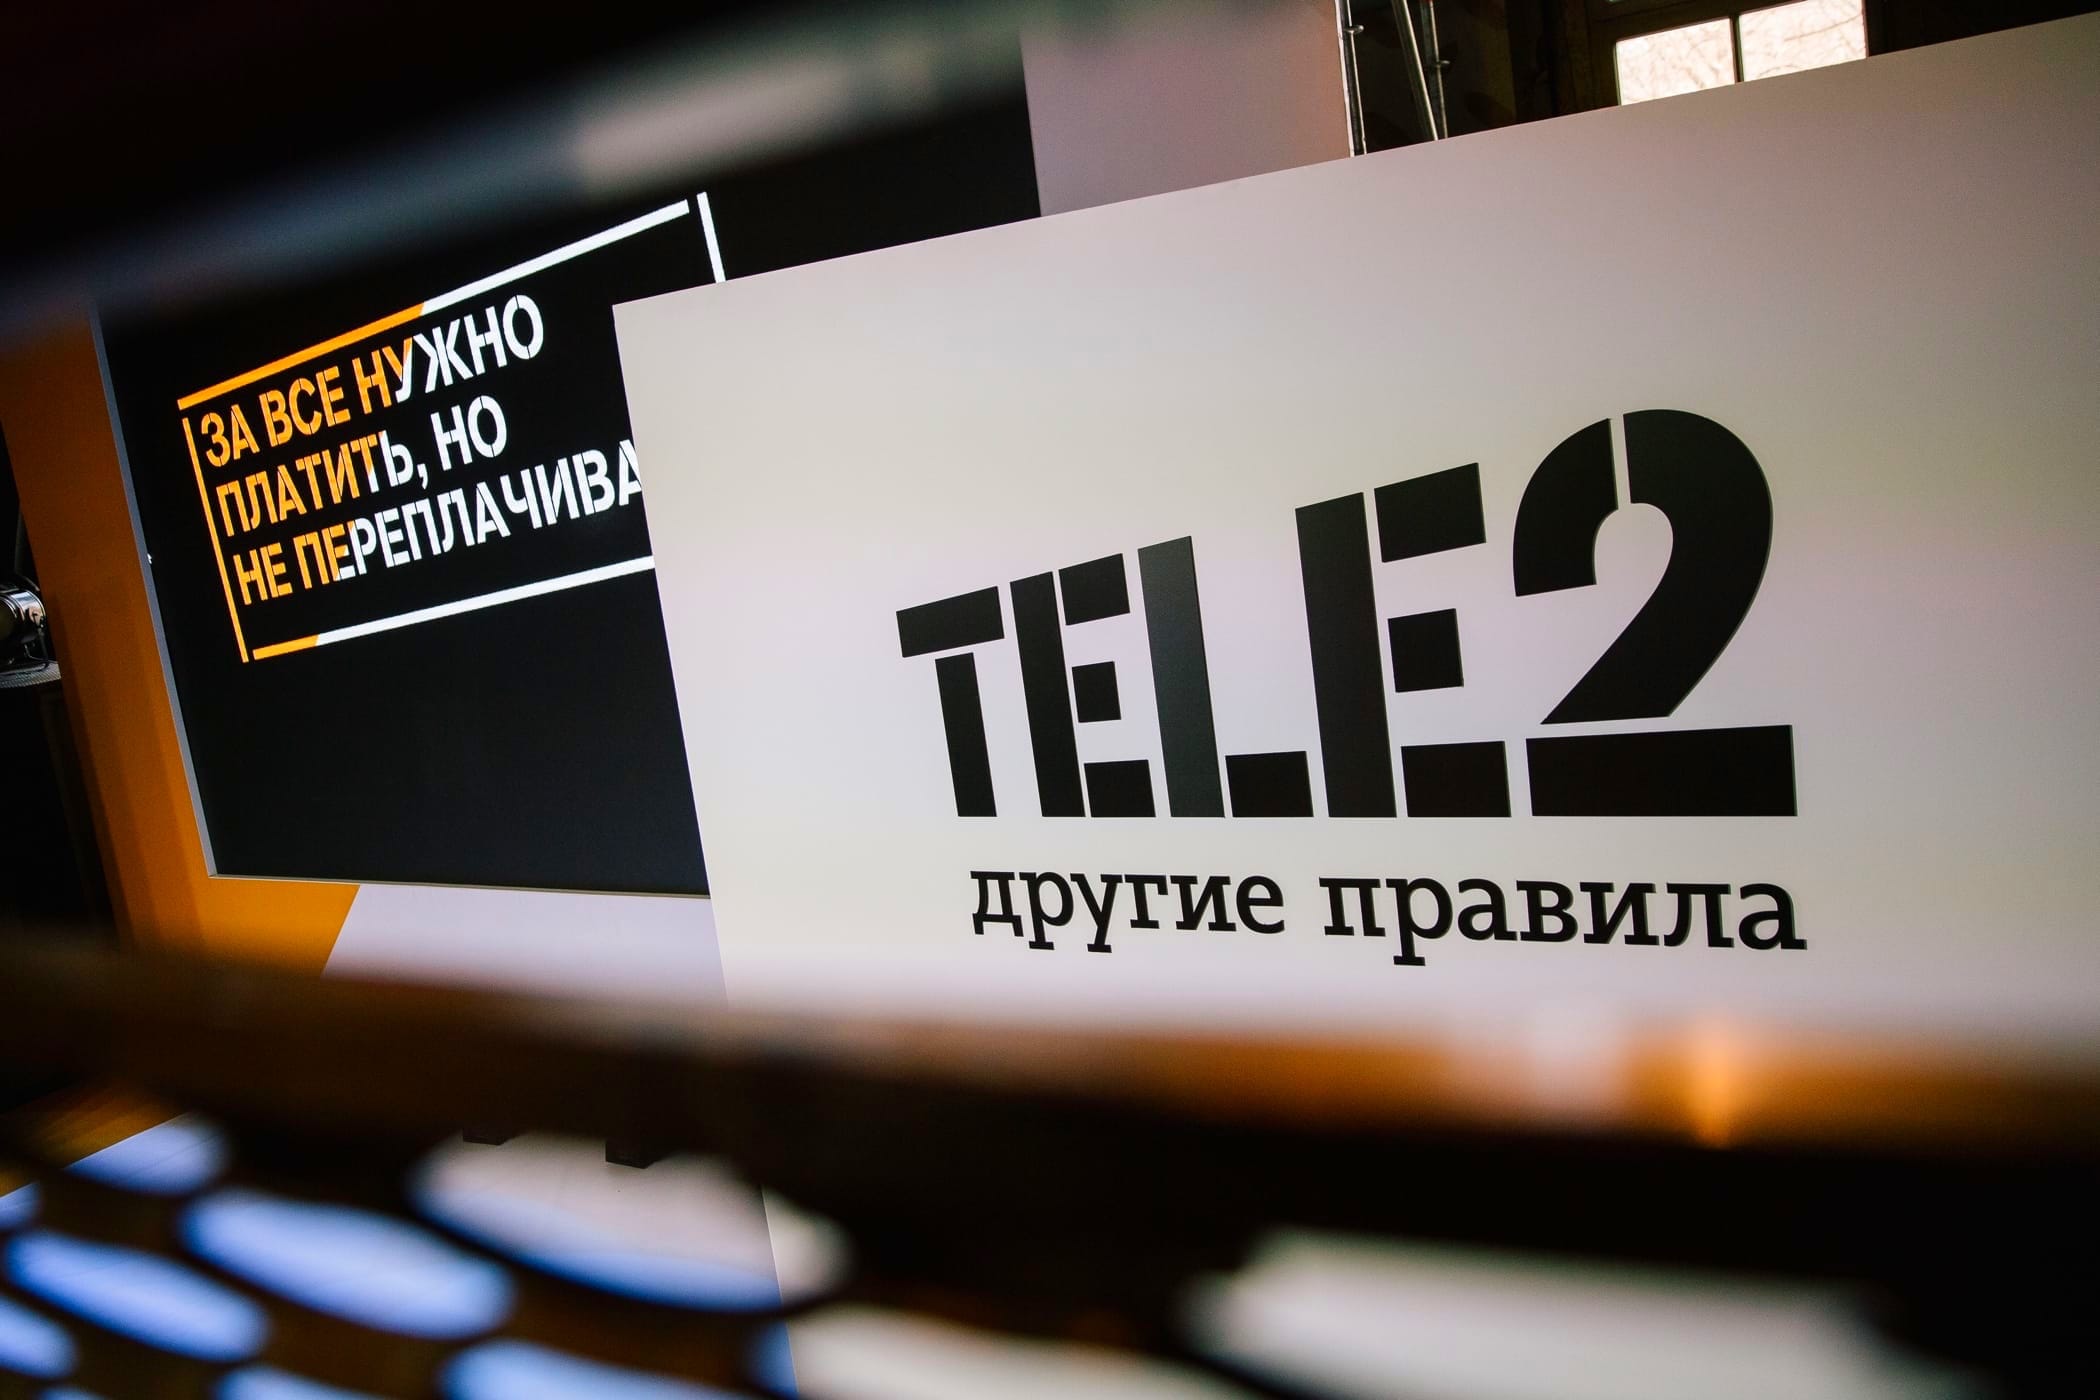 Сотовый оператор Tele2 объявил об изменении оказания услуг связи на всех тарифах